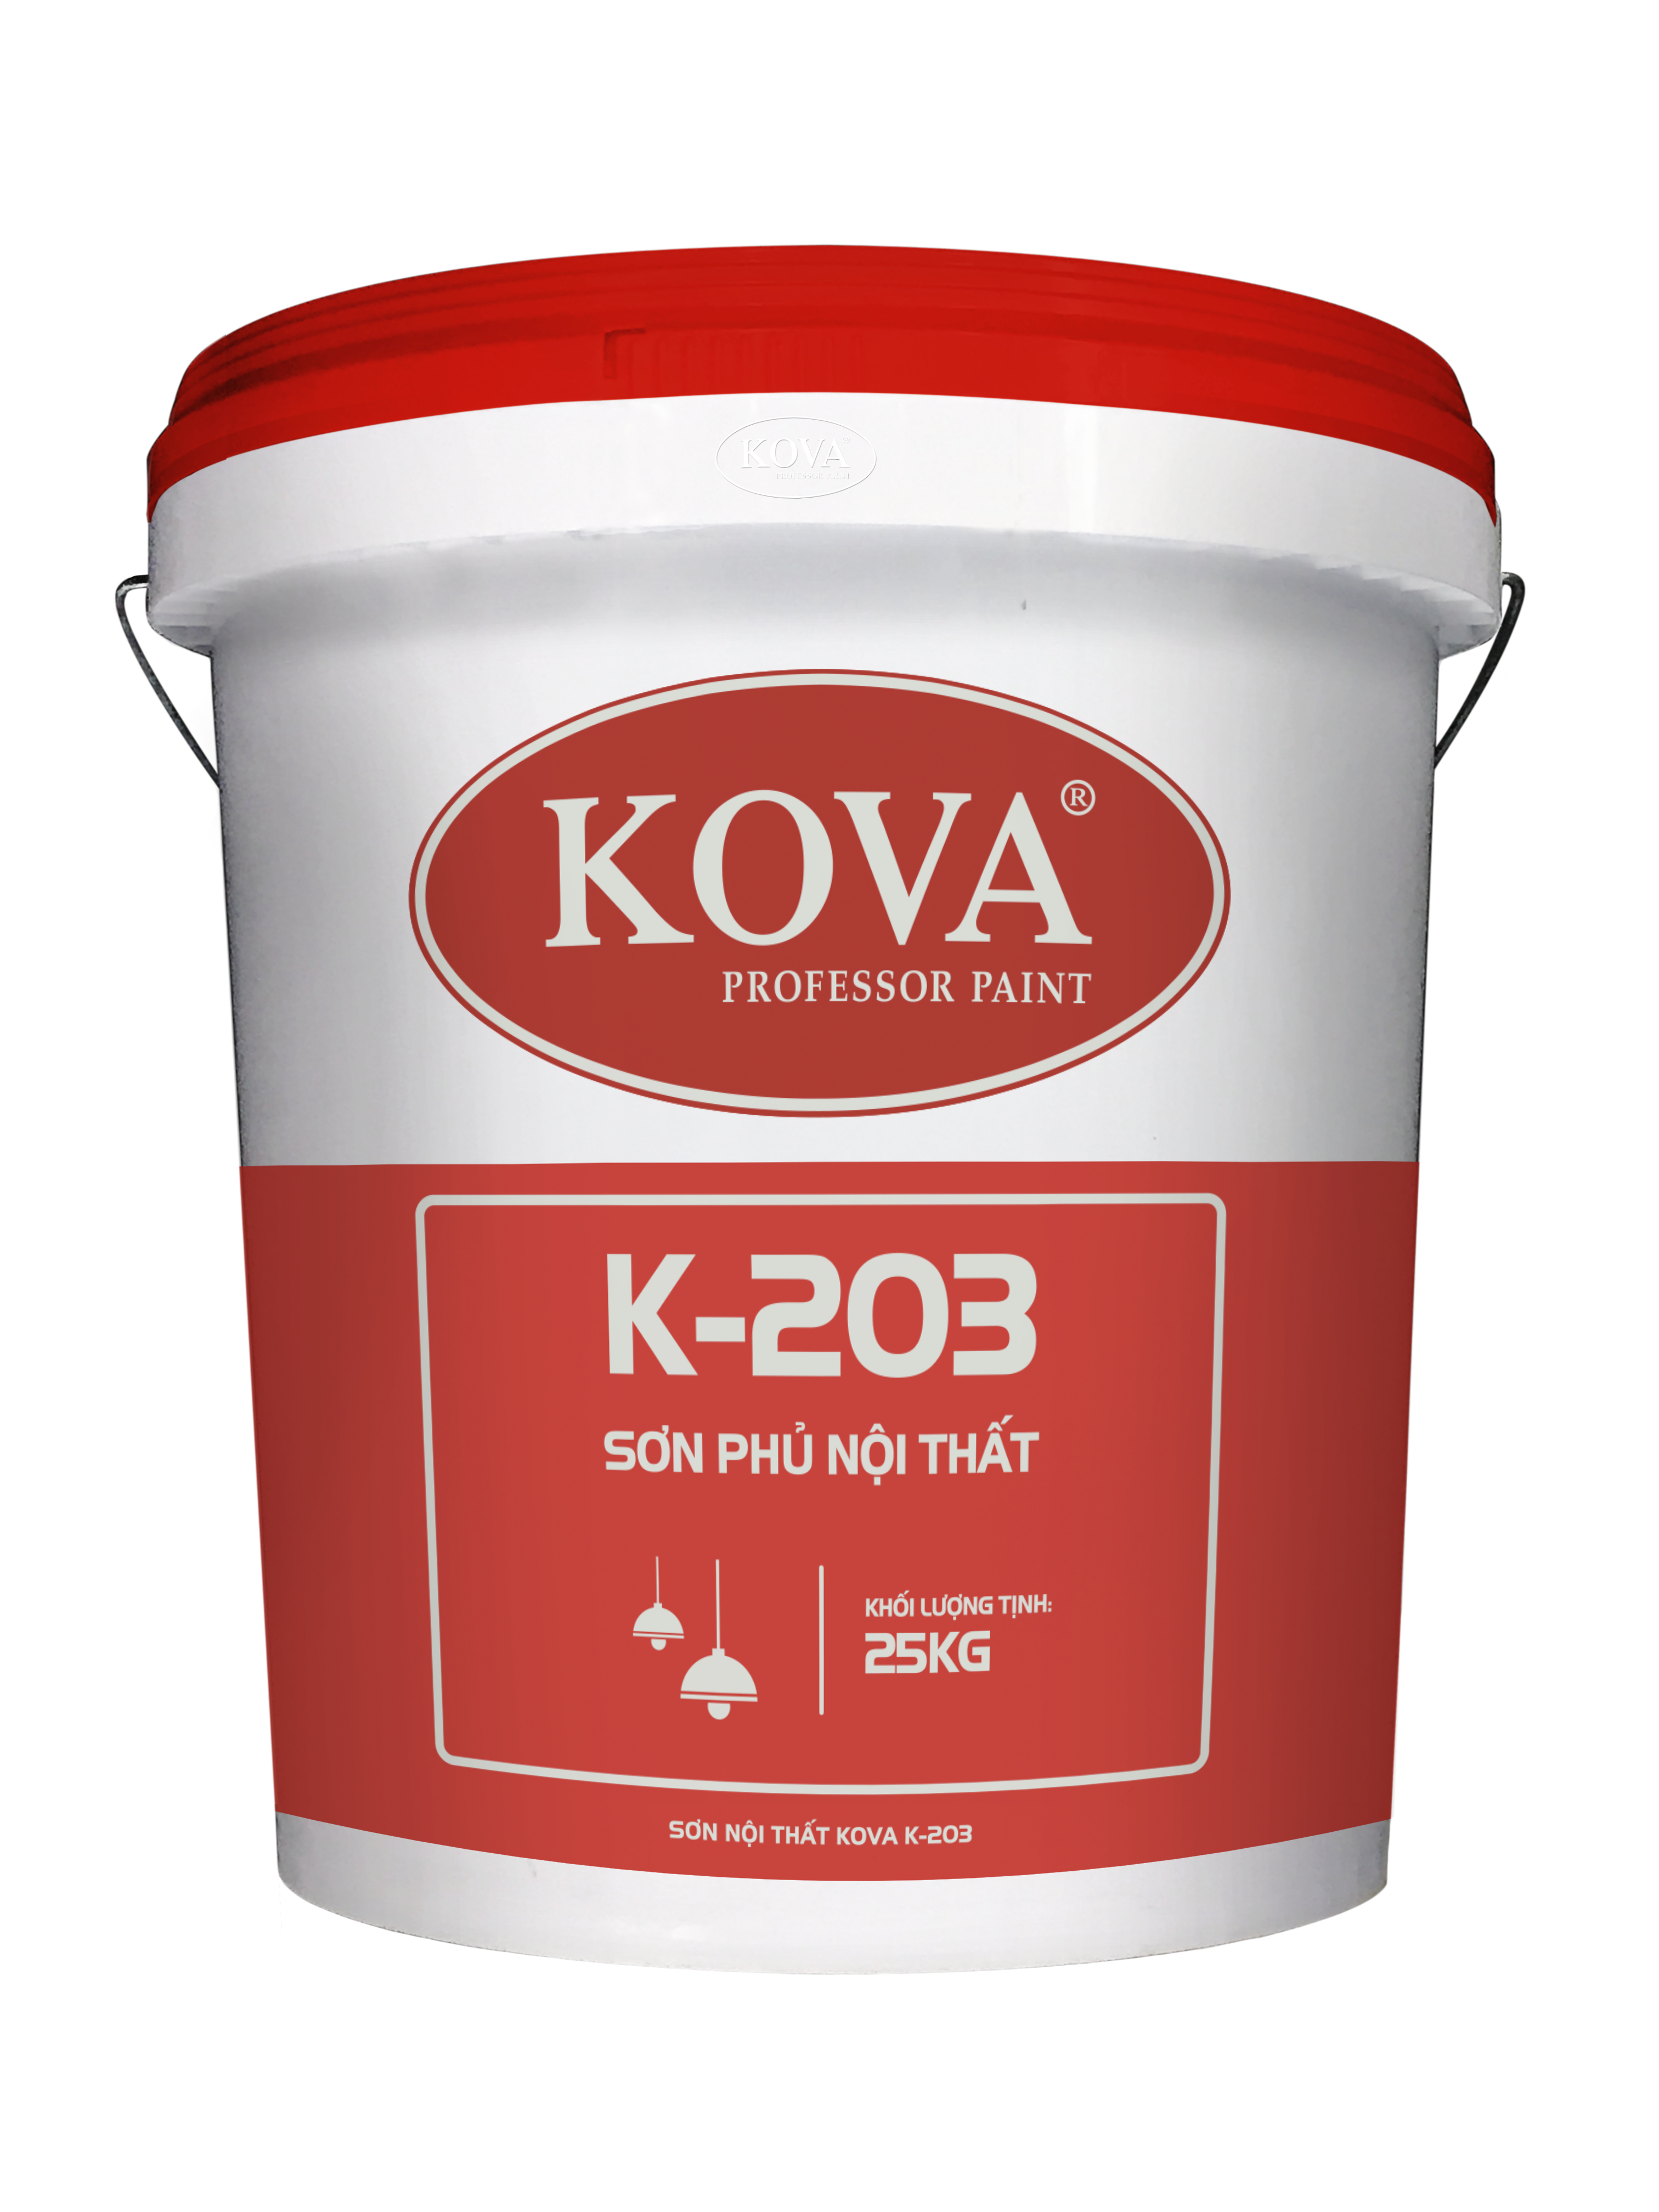 Sơn Nội Thất KOVA K-203: Sự kết hợp hài hòa giữa màu sắc và sự bảo vệ cho bề mặt của căn phòng với độ phủ sơn Kova. Thăng hoa với sự đa dạng của màu sắc và chất lượng của sản phẩm. Sơn Nội Thất KOVA K-203 là lựa chọn hoàn hảo cho không gian sống của bạn.